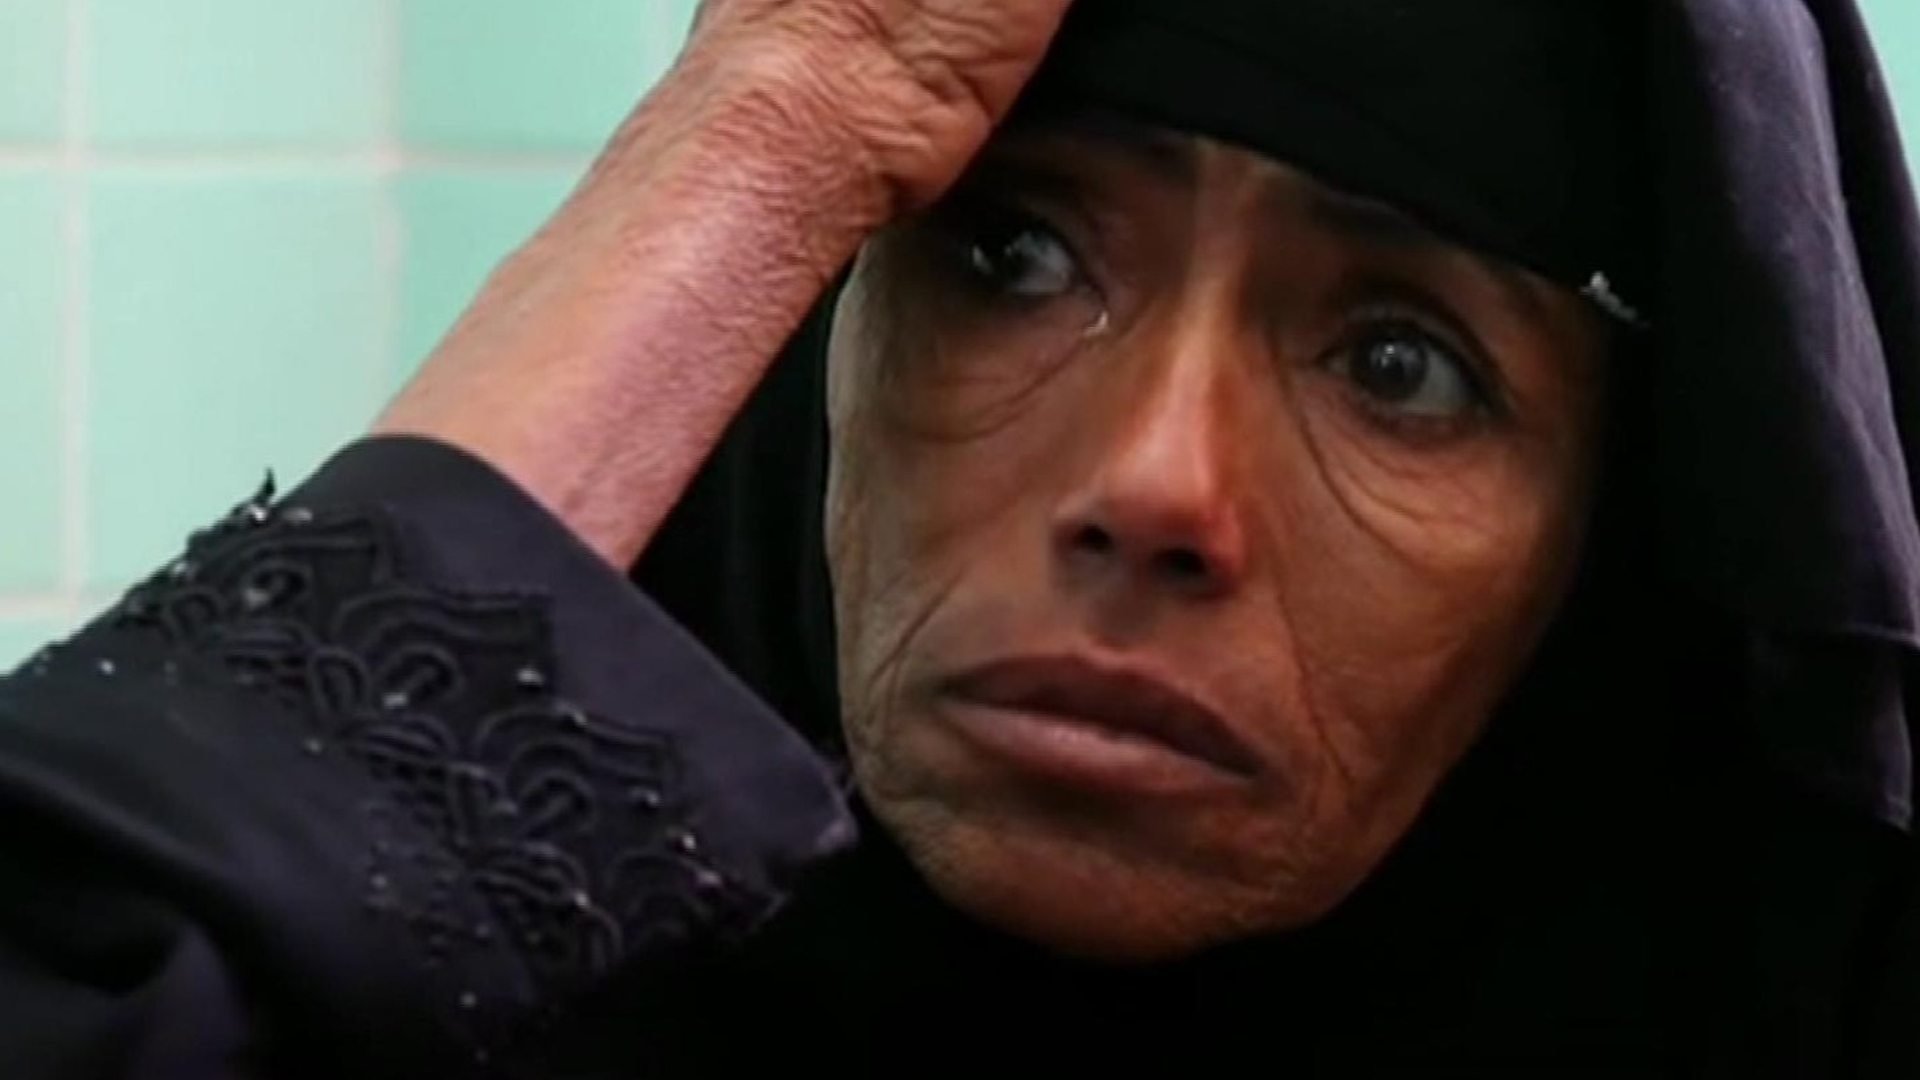 Yemen on brink of 'worst famine in 100 years'